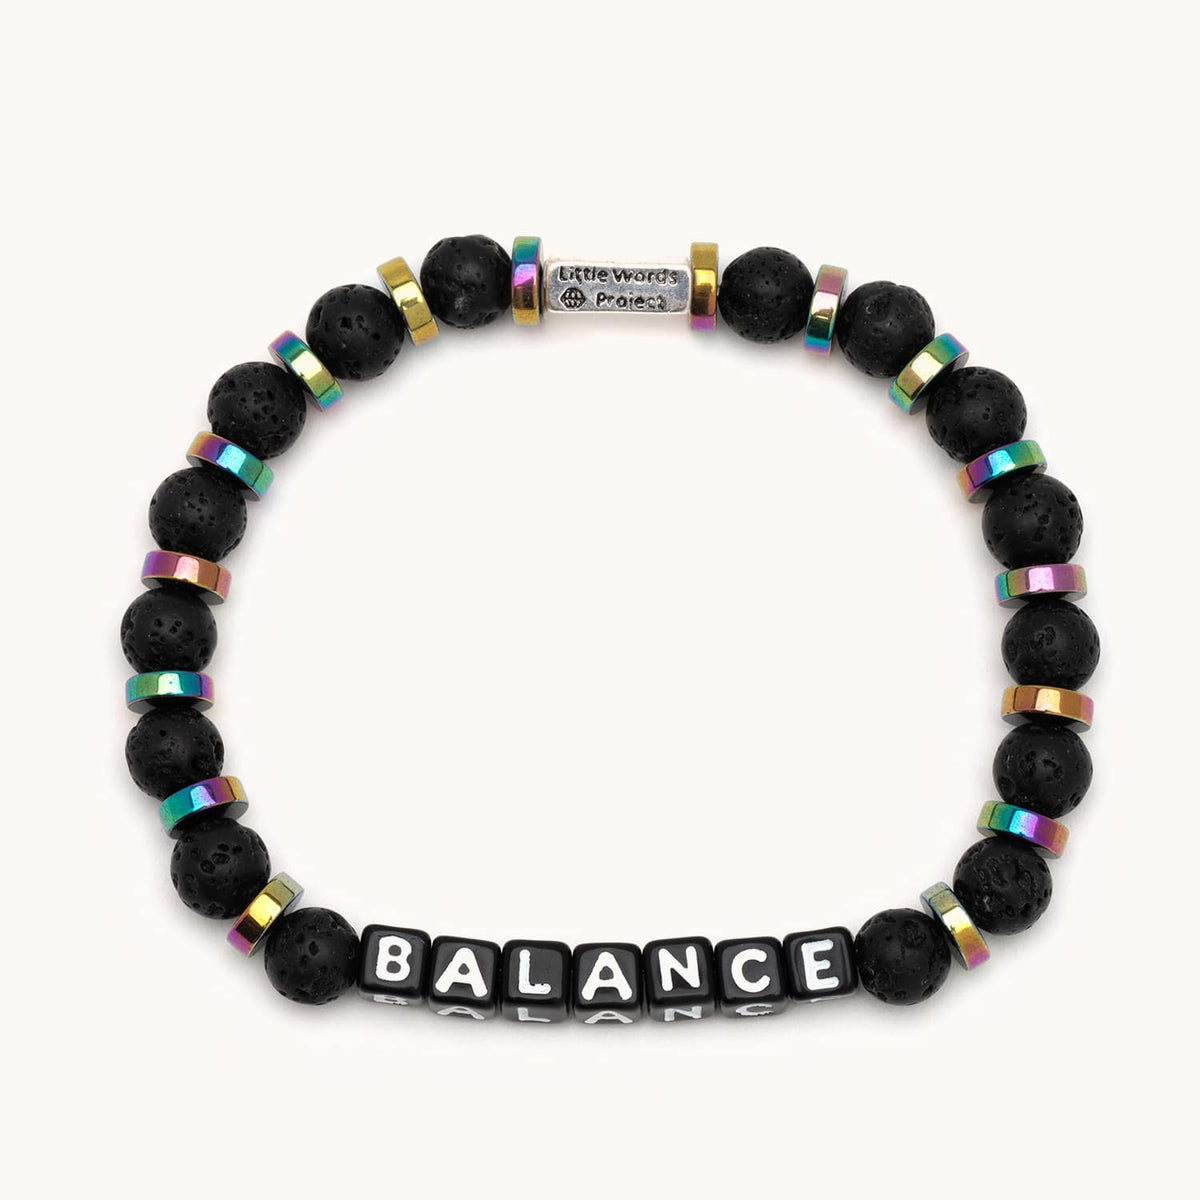 Balance - Men's Bracelet - Little Words Project